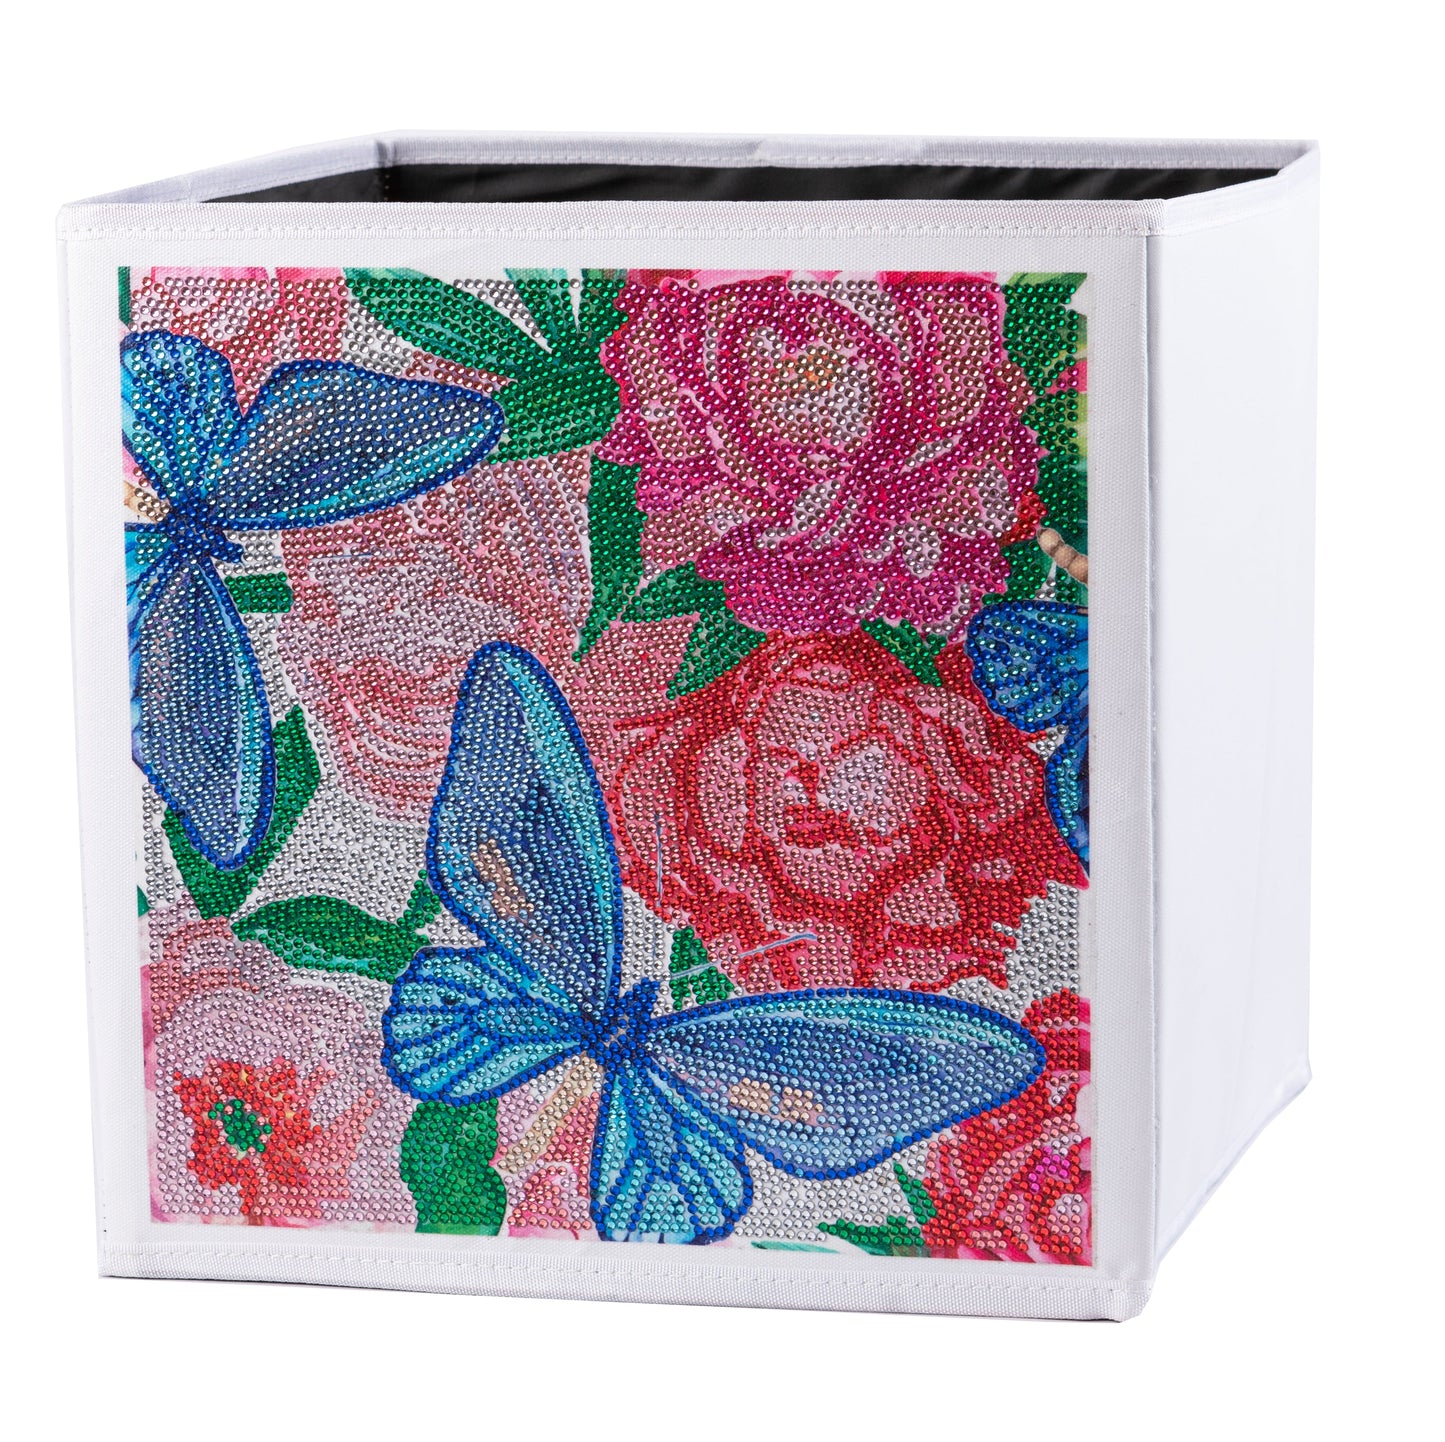 CA-FSBKT11: Crystal Art Folding Storage Box - Butterflies & Peonies